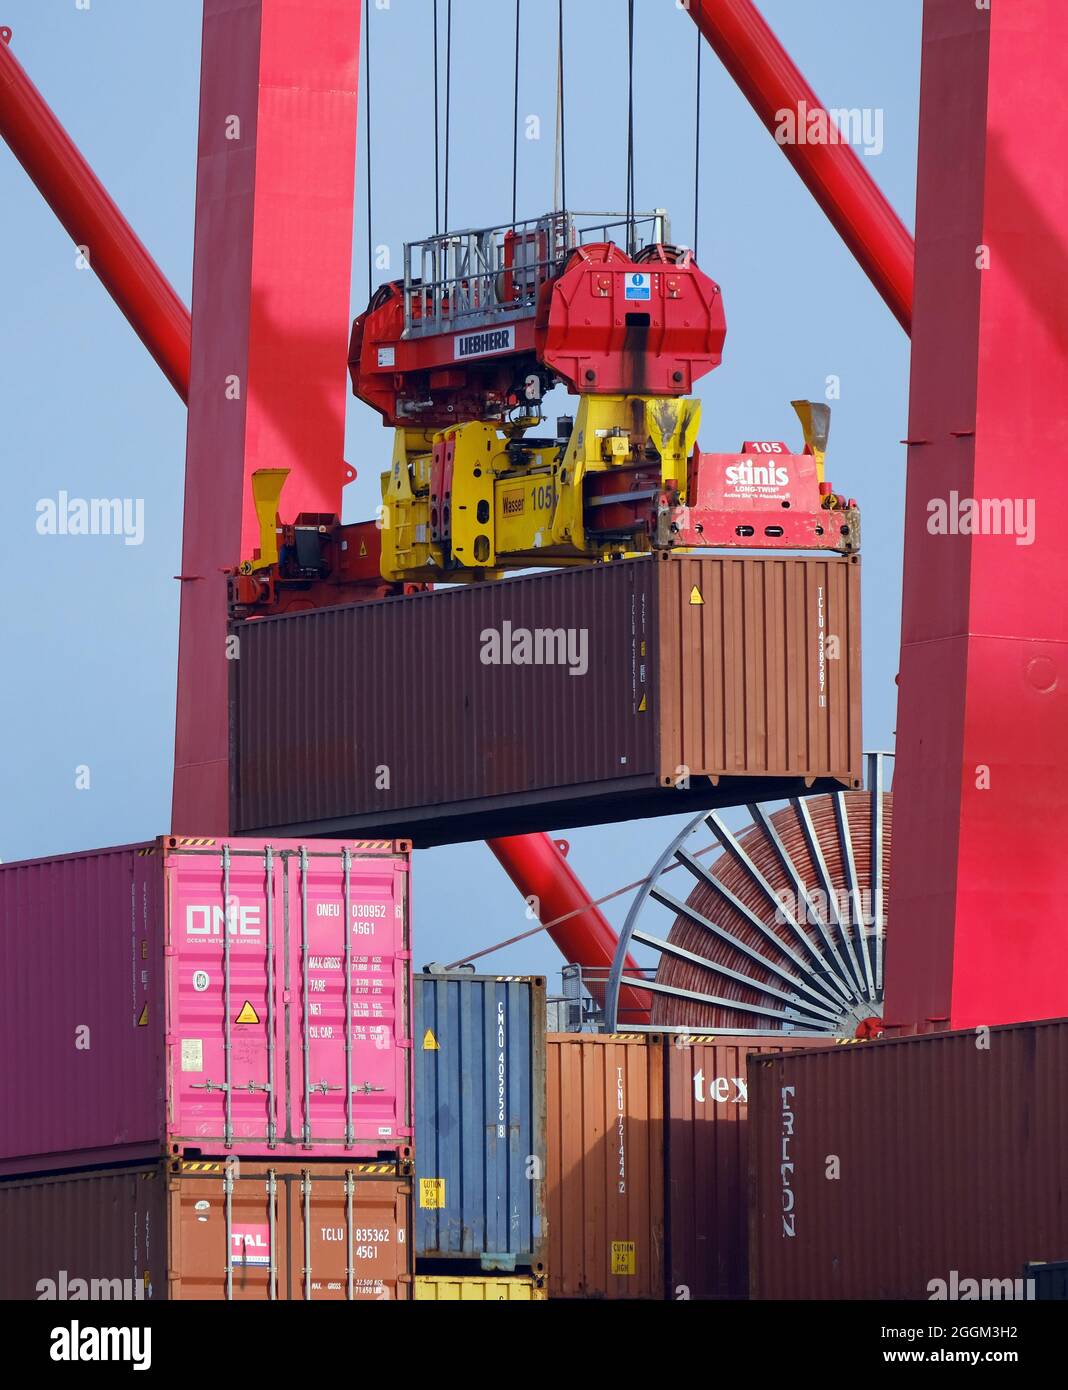 Hambourg, Allemagne - navire à conteneurs dans le port de Hambourg, le navire à conteneurs Nordsummer se trouve au terminal à conteneurs Eurogate. Le navire à conteneurs de 247 mètres de long Nordsummer du Portugal peut transporter jusqu'à 3,500 conteneurs maritimes. Le port de Hambourg est le point final de la route maritime de la soie vers la Chine. Banque D'Images